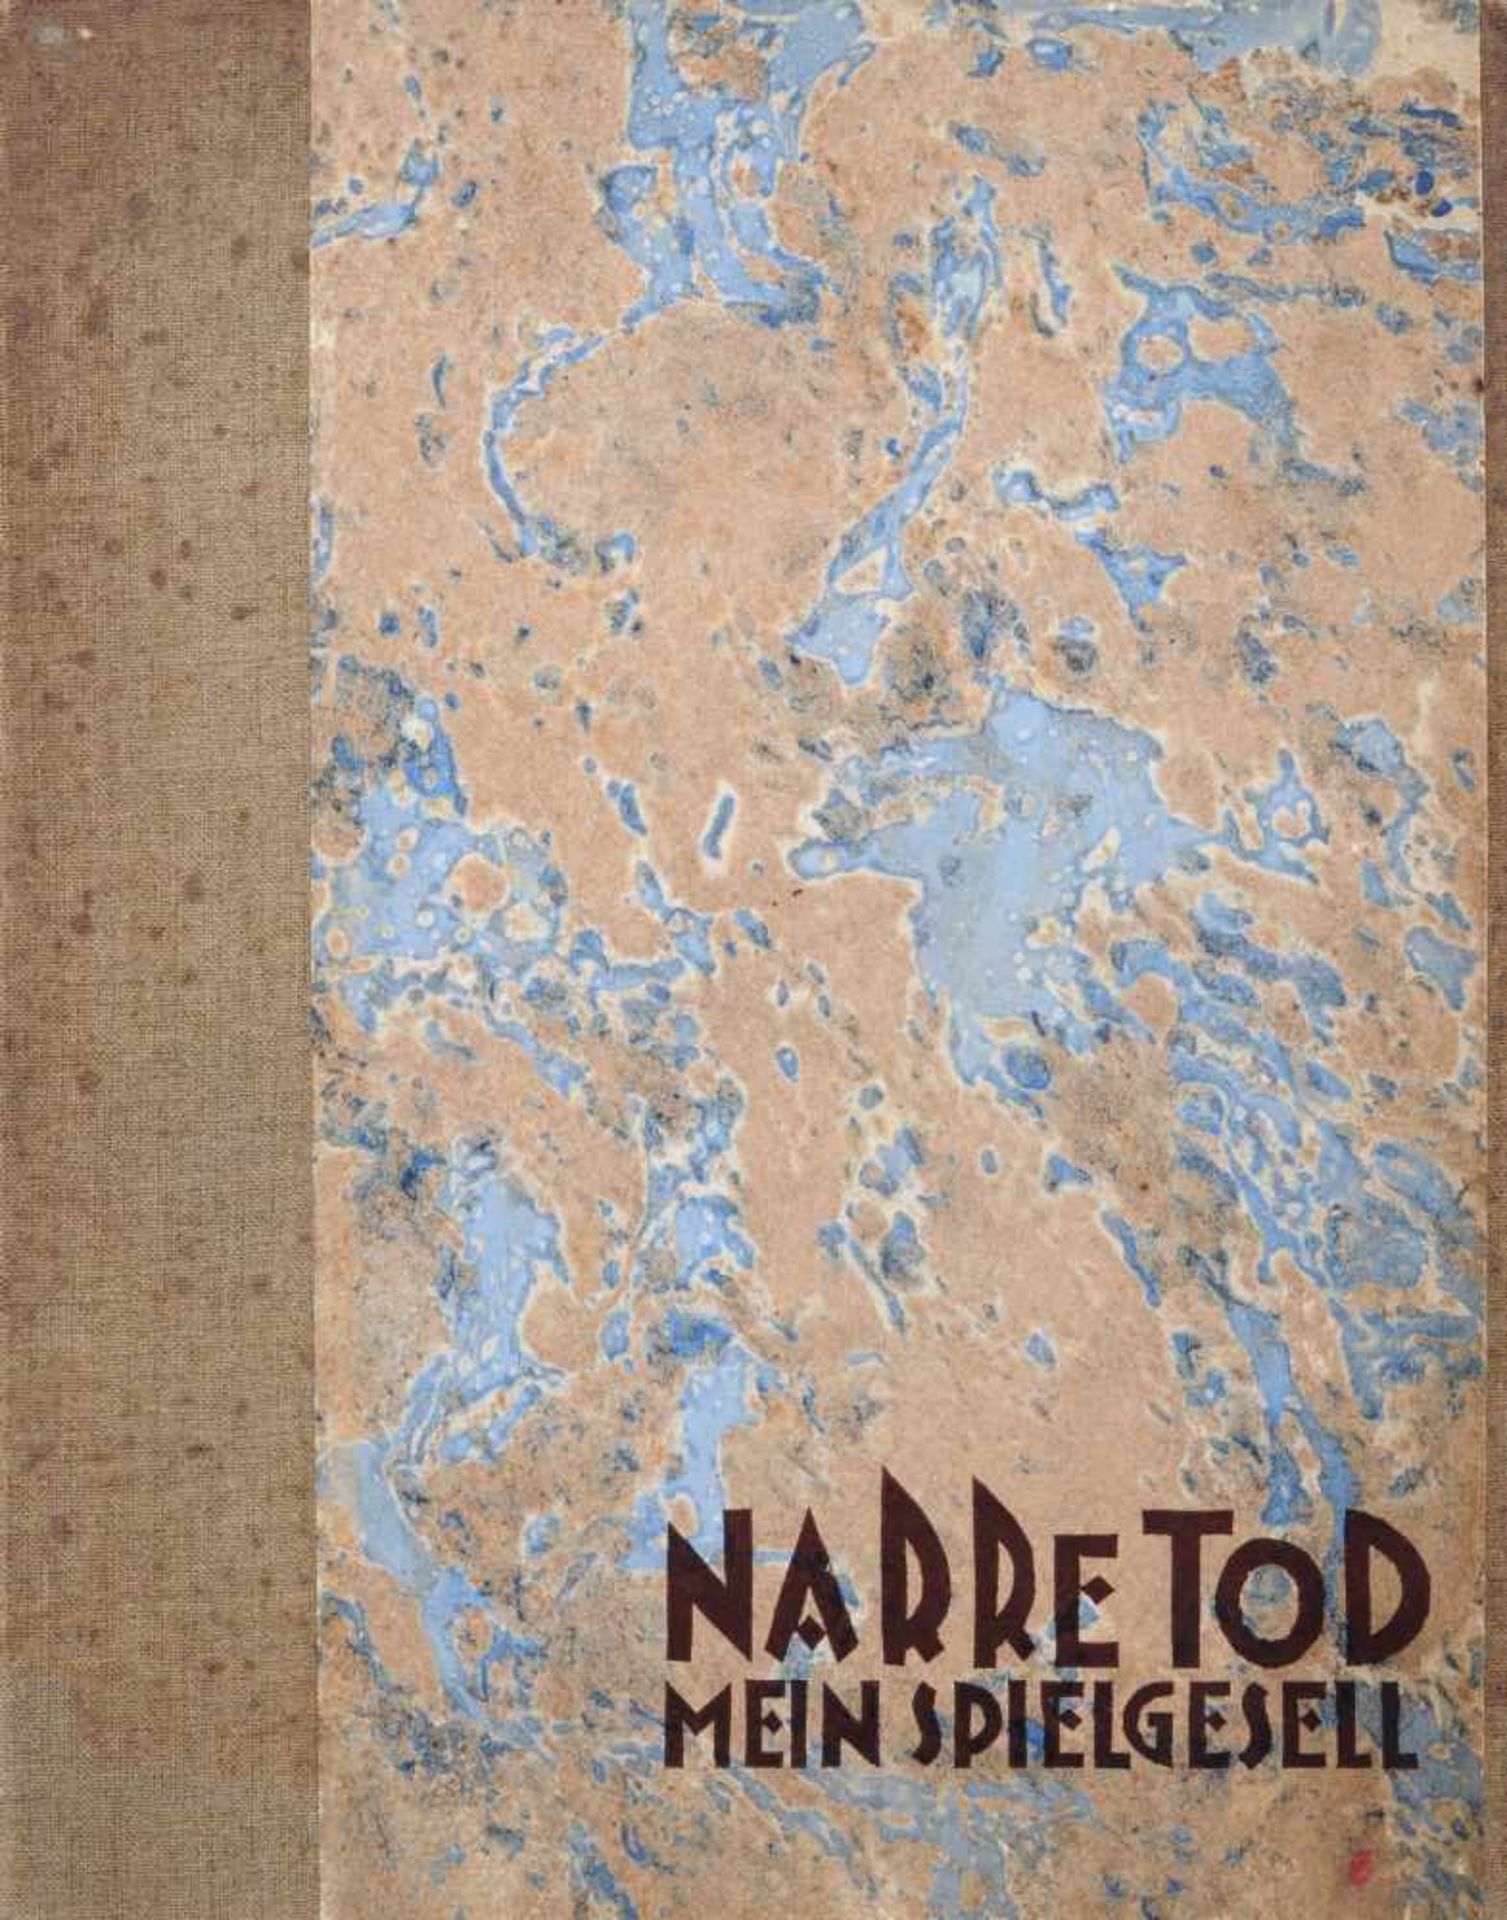 Franz Fiedler "Narre Tod, mein Spielgesell". 1921. Mappe mit neun Bromsilbergelatineabzügen und